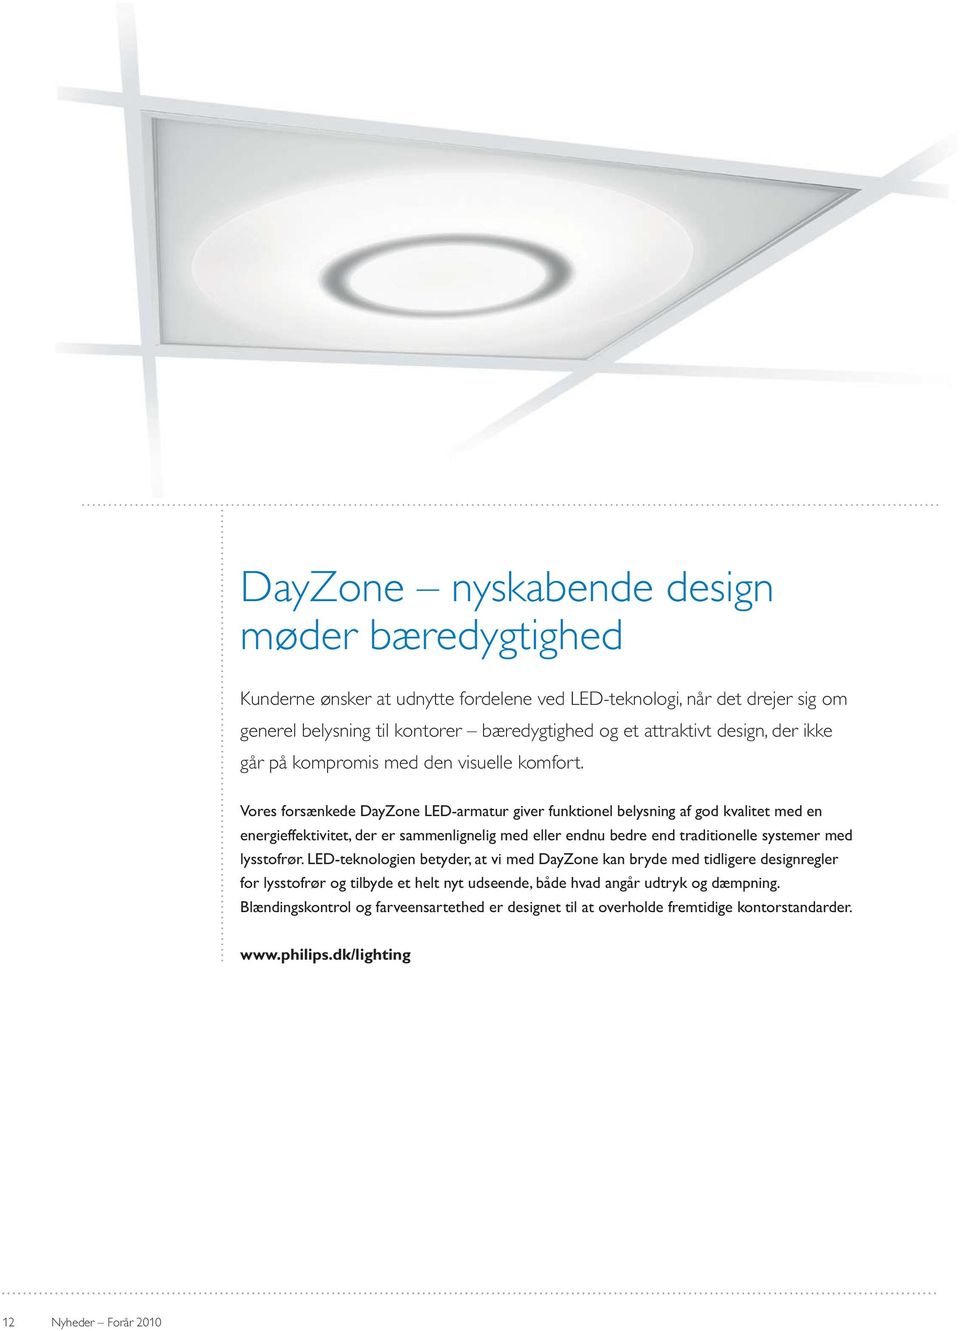 Vores forsænkede DayZone LED-armatur giver funktionel belysning af god kvalitet med en energieffektivitet, der er sammenlignelig med eller endnu bedre end traditionelle systemer med